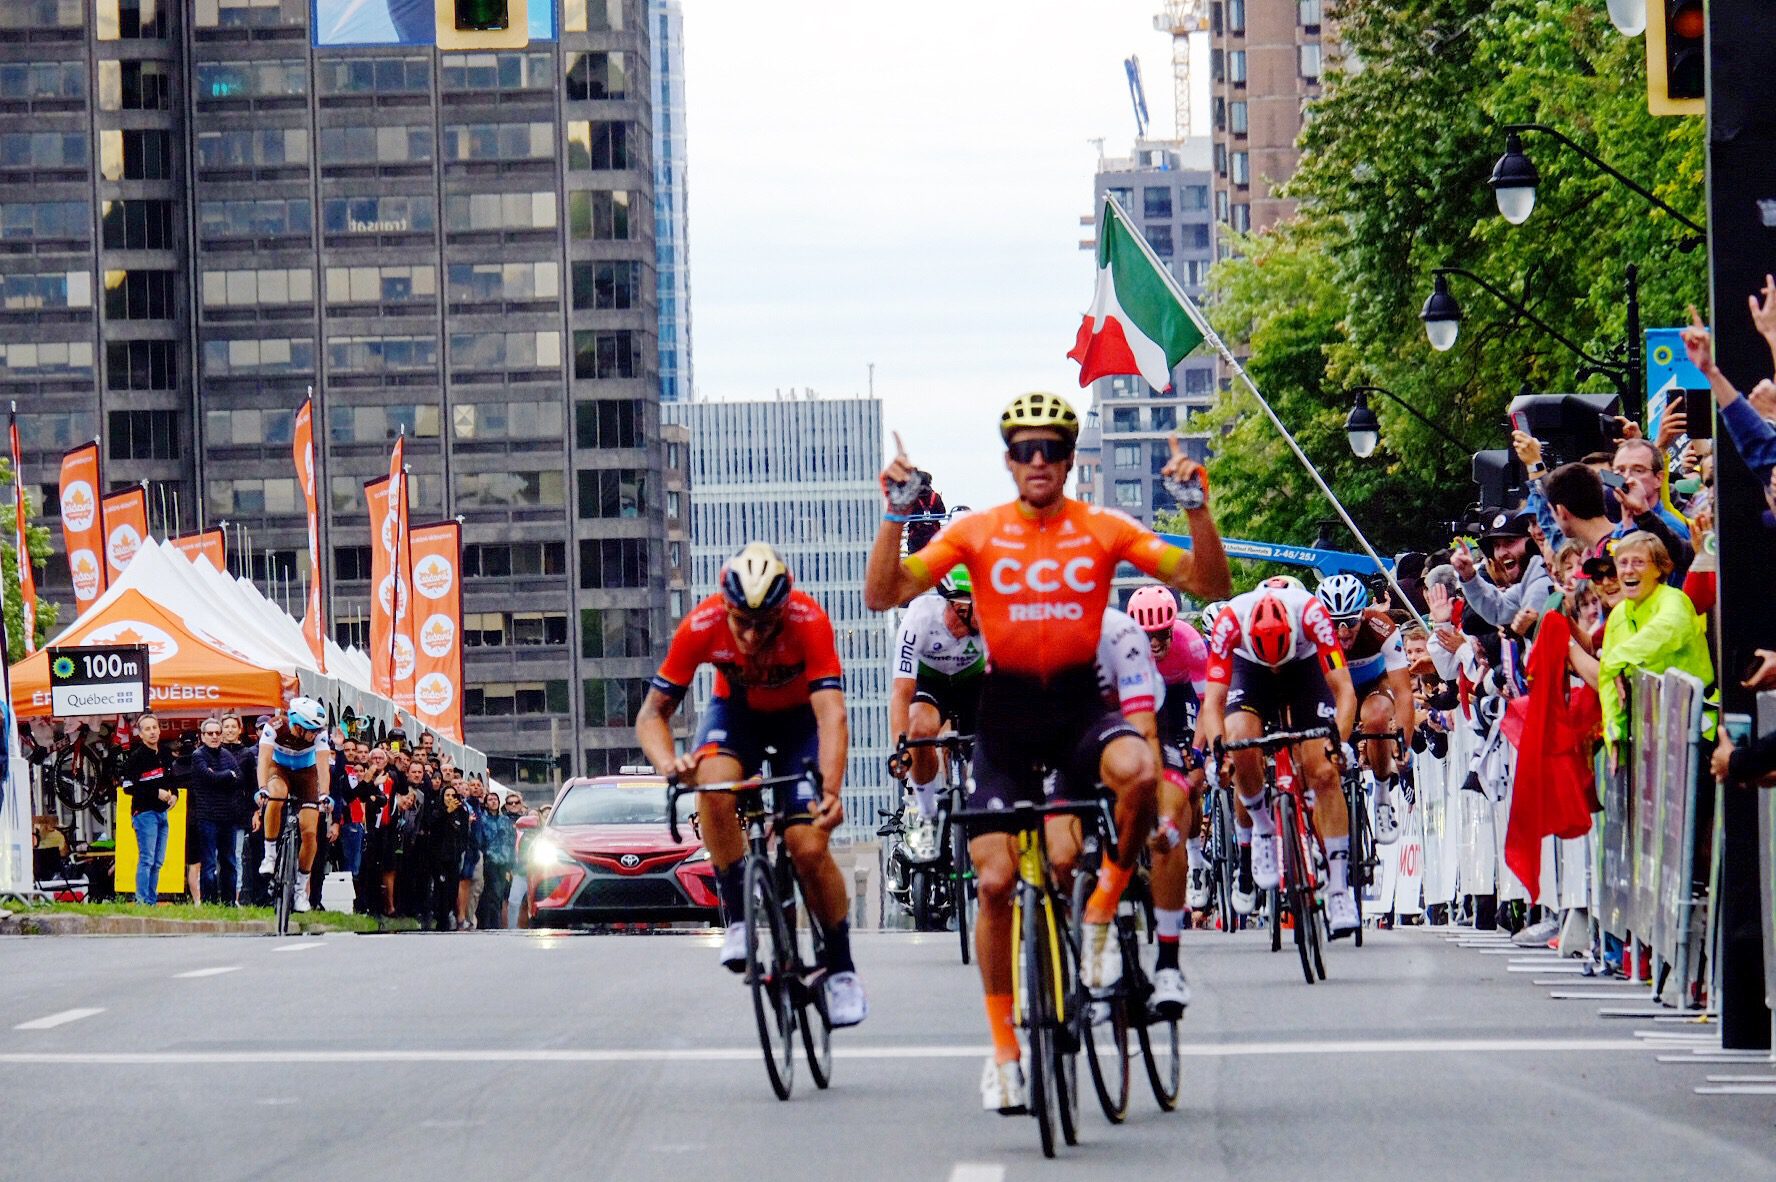 Grand Prix Cycliste de Montréal | 1.1 | 9/2 GregVanAvermaetMontreal